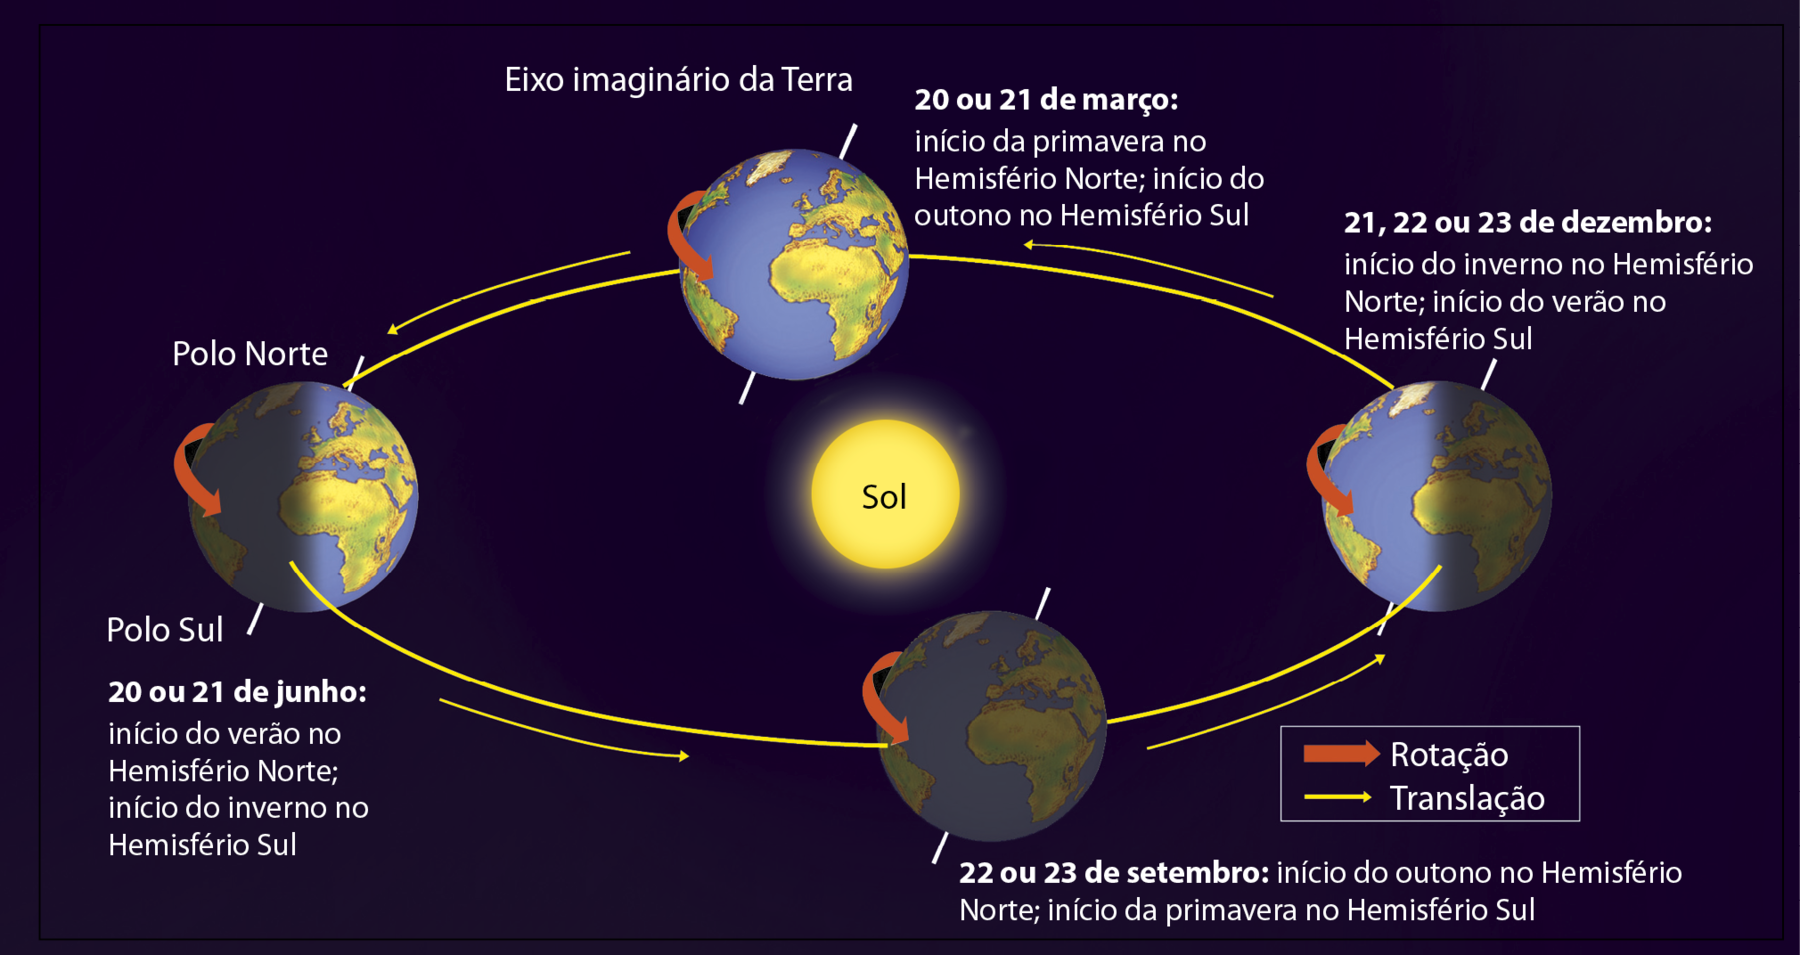 Ilustração. Estações do ano. O planeta Terra foi reproduzido quatro vezes em diferentes posições de sua órbita elíptica em volta do Sol, que por sua vez, está posicionado ao centro do esquema. O movimento de rotação é sinalizado por uma seta vermelha do lado esquerdo de todos os quatro planetas ilustrados, e aponta para a direita, indicando o sentido que o planeta gira. O movimento de translação é representado por uma seta amarela que acompanha o traço da órbita da Terra. A seta aponta para o lado direito. Em cada planeta também foi reproduzido o seu eixo de inclinação. Cada posição do planeta Terra em seu movimento de translação indica uma data específica do ano e suas características, da seguinte forma: 21, 22 ou 23 de dezembro: início do inverno no Hemisfério Norte; início do verão no Hemisfério Sul. A posição do planeta relacionada a essa data está na extremidade da elipse à direita. 20 ou 21 de março: início da primavera no Hemisfério Norte; início do outono no Hemisfério Sul. A posição do planeta Terra relacionada a essa data está na parte superior da ilustração. 20 ou 21 de junho: início do verão no Hemisfério Norte; início do inverno no Hemisfério Sul. A posição do planeta relacionada a essa data está na extremidade do elipse à esquerda. 22 ou 23 de setembro: início do outono no Hemisfério Norte; início da primavera no Hemisfério Sul. A posição do planeta Terra relacionada a essa data está na parte inferior da ilustração.